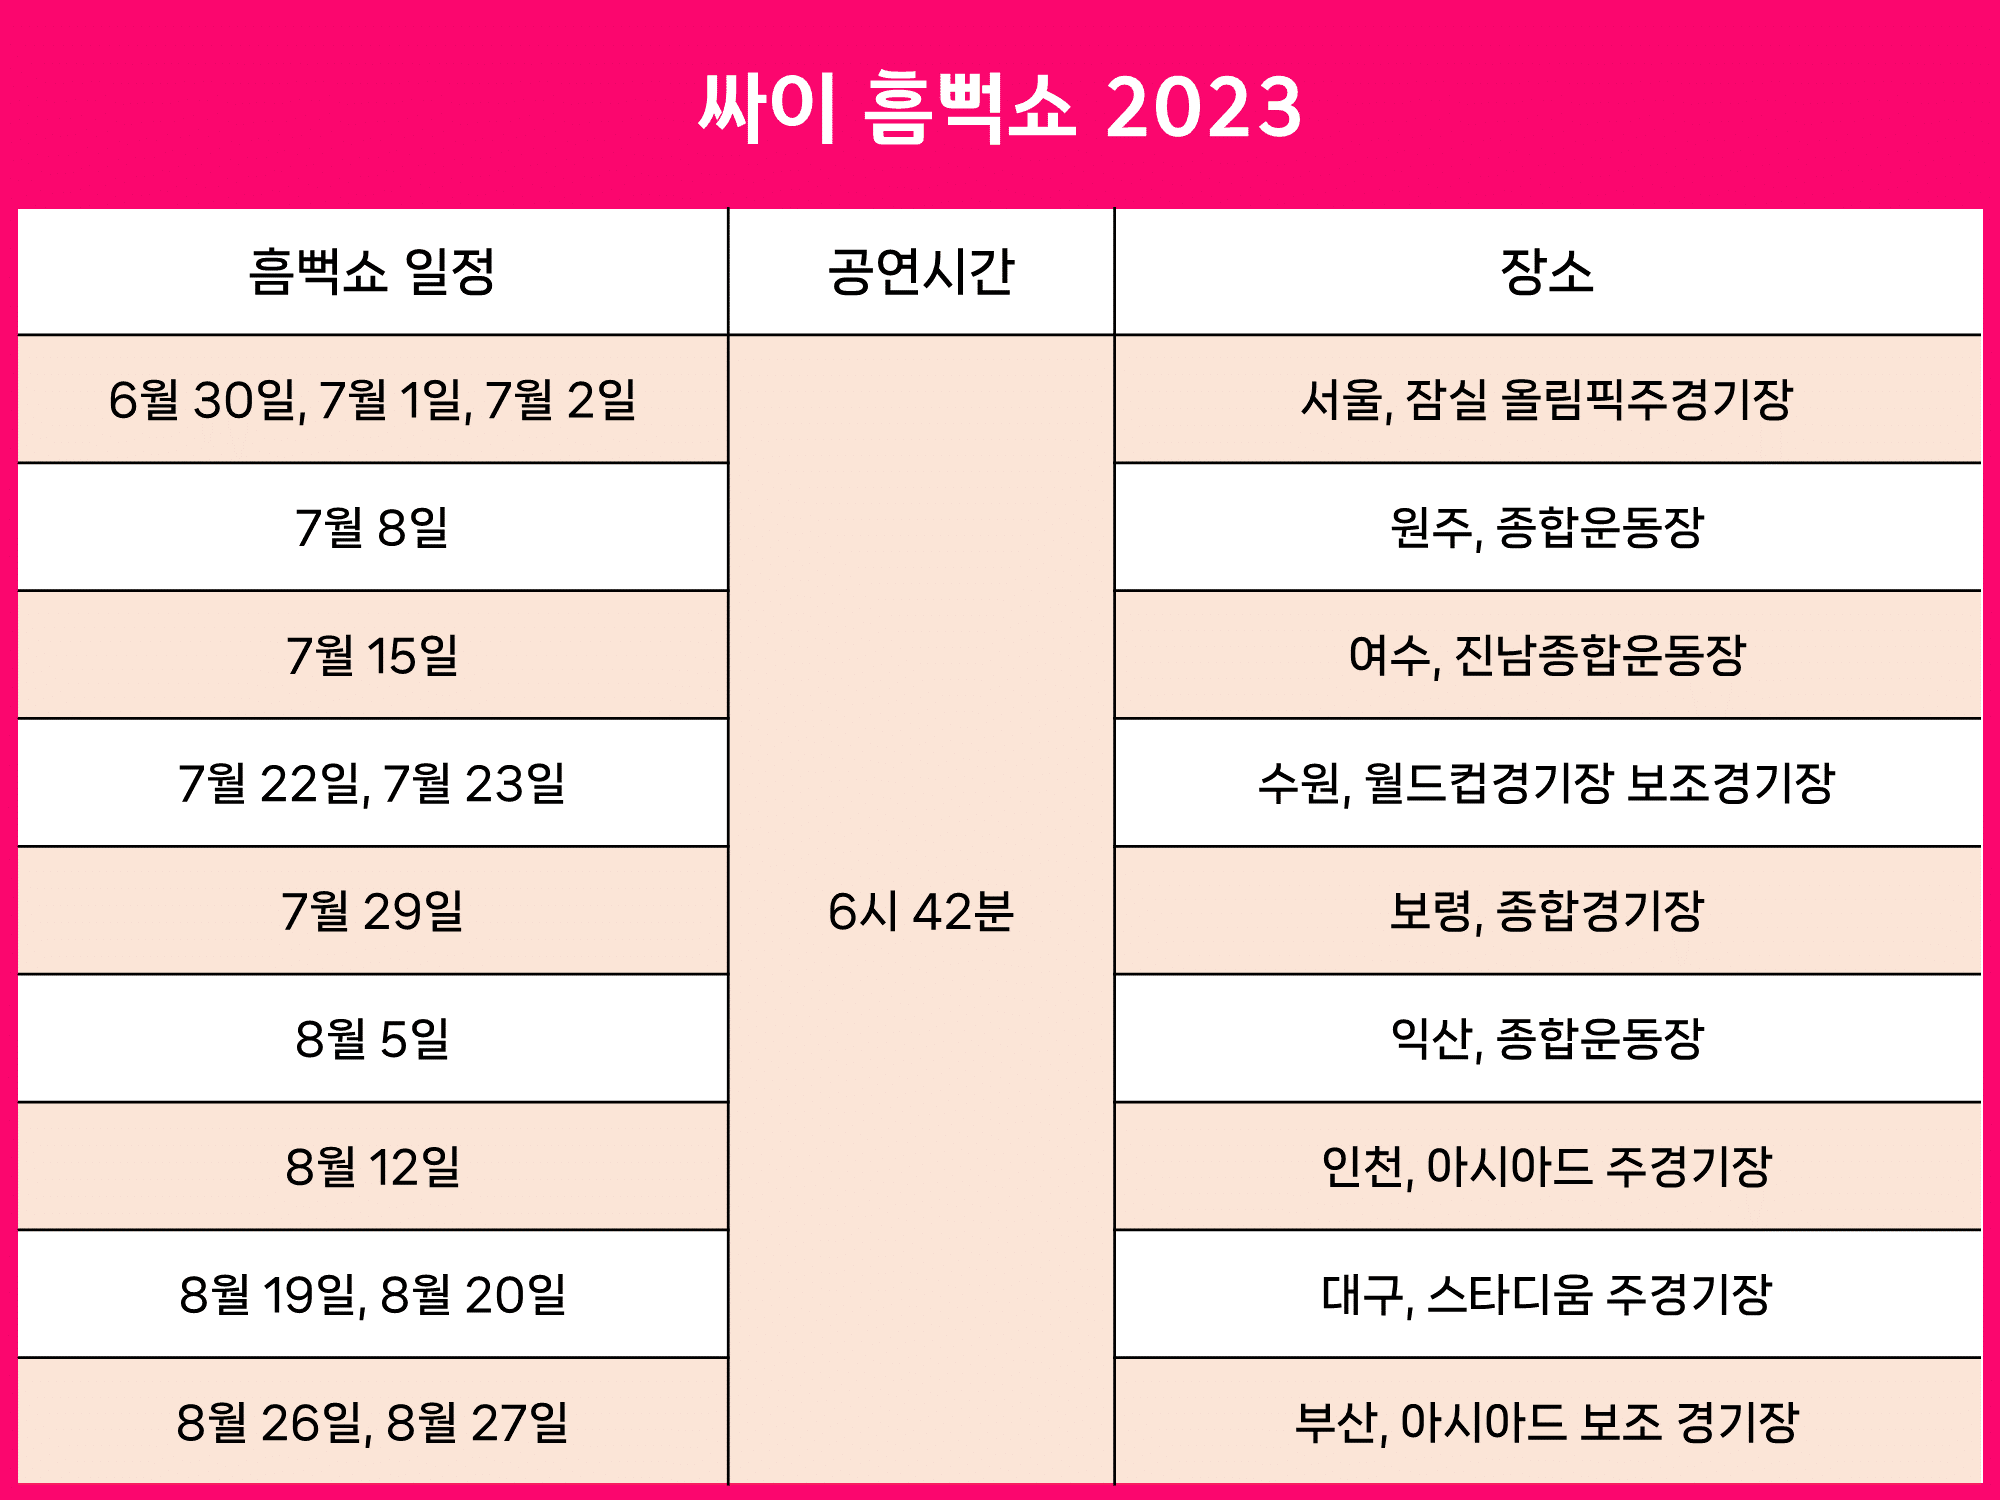 싸이 흠뻑쇼 2023 콘서트 일정
